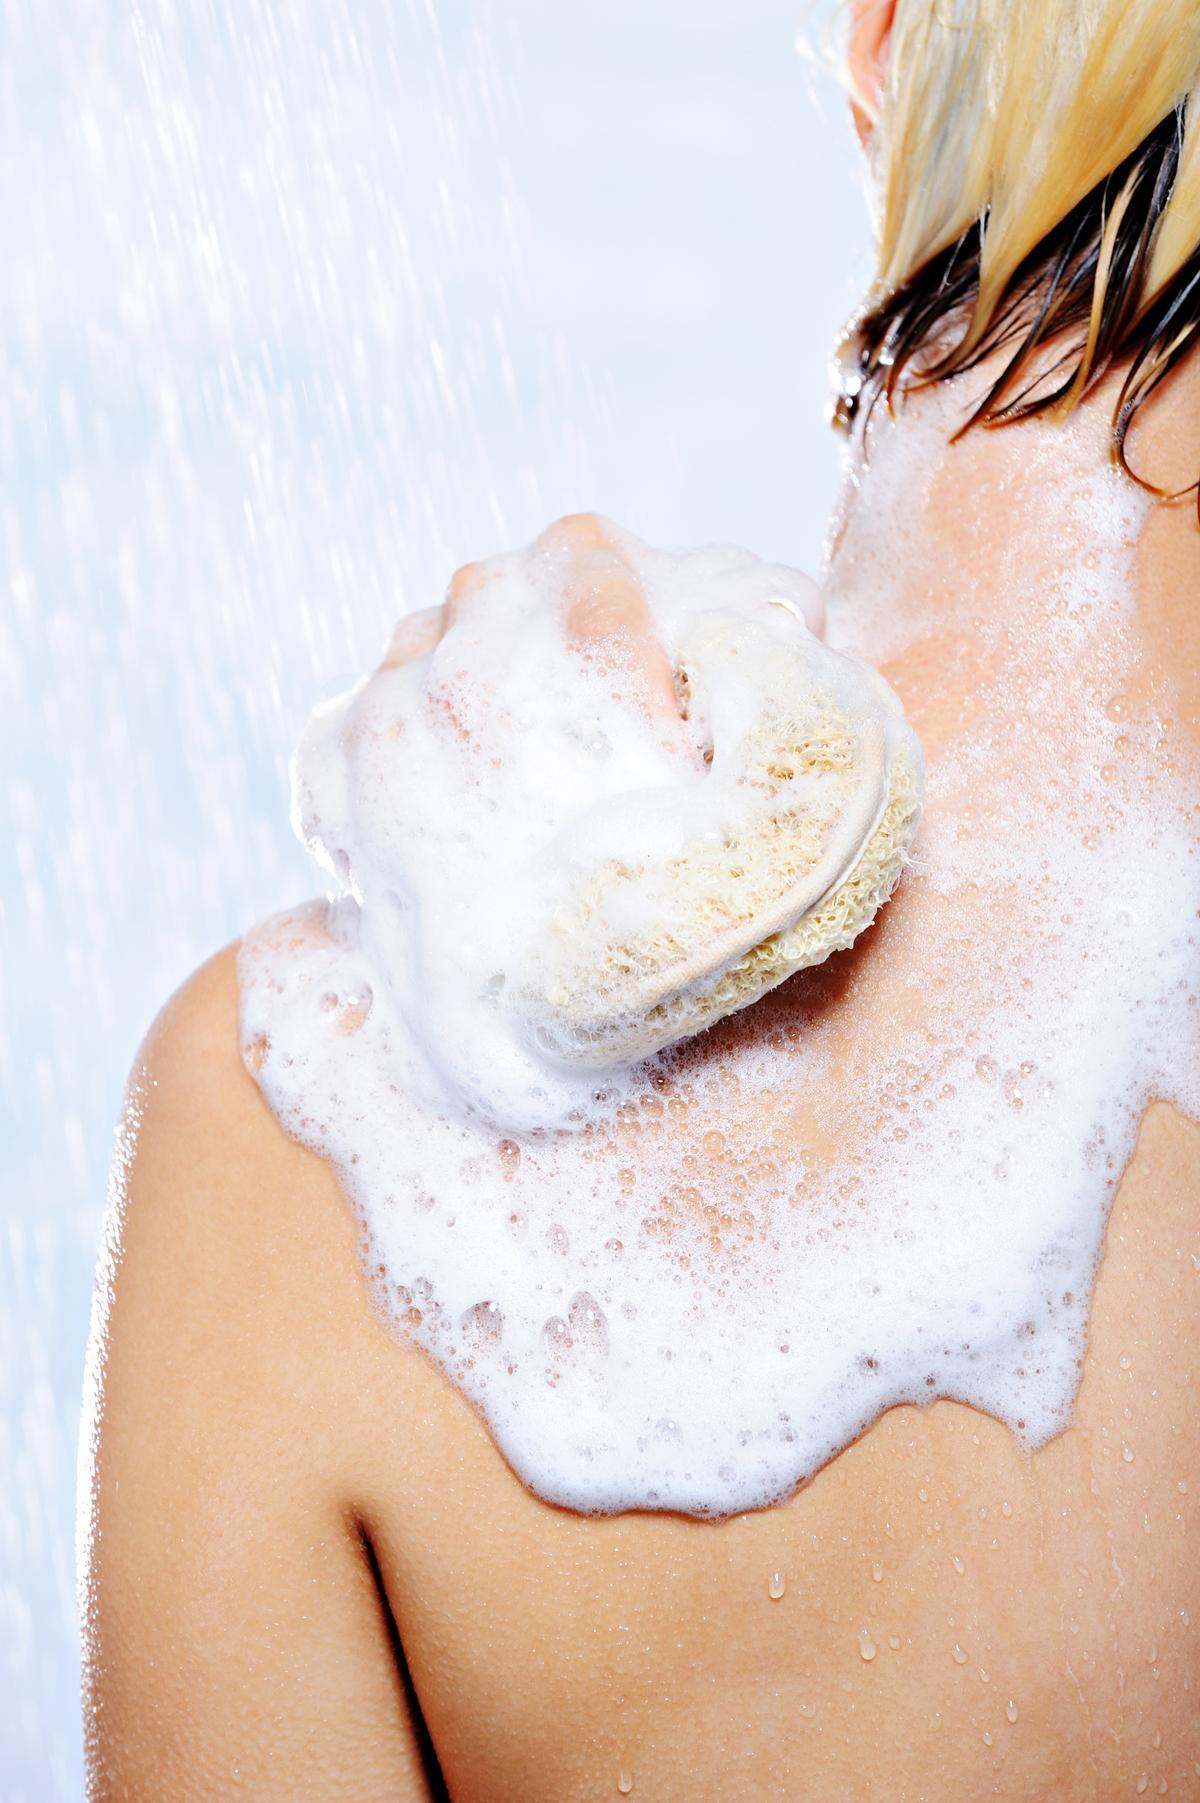 La esponja actúa como exfoliante, limpia y permite higienizar más en profundidad que la mano.